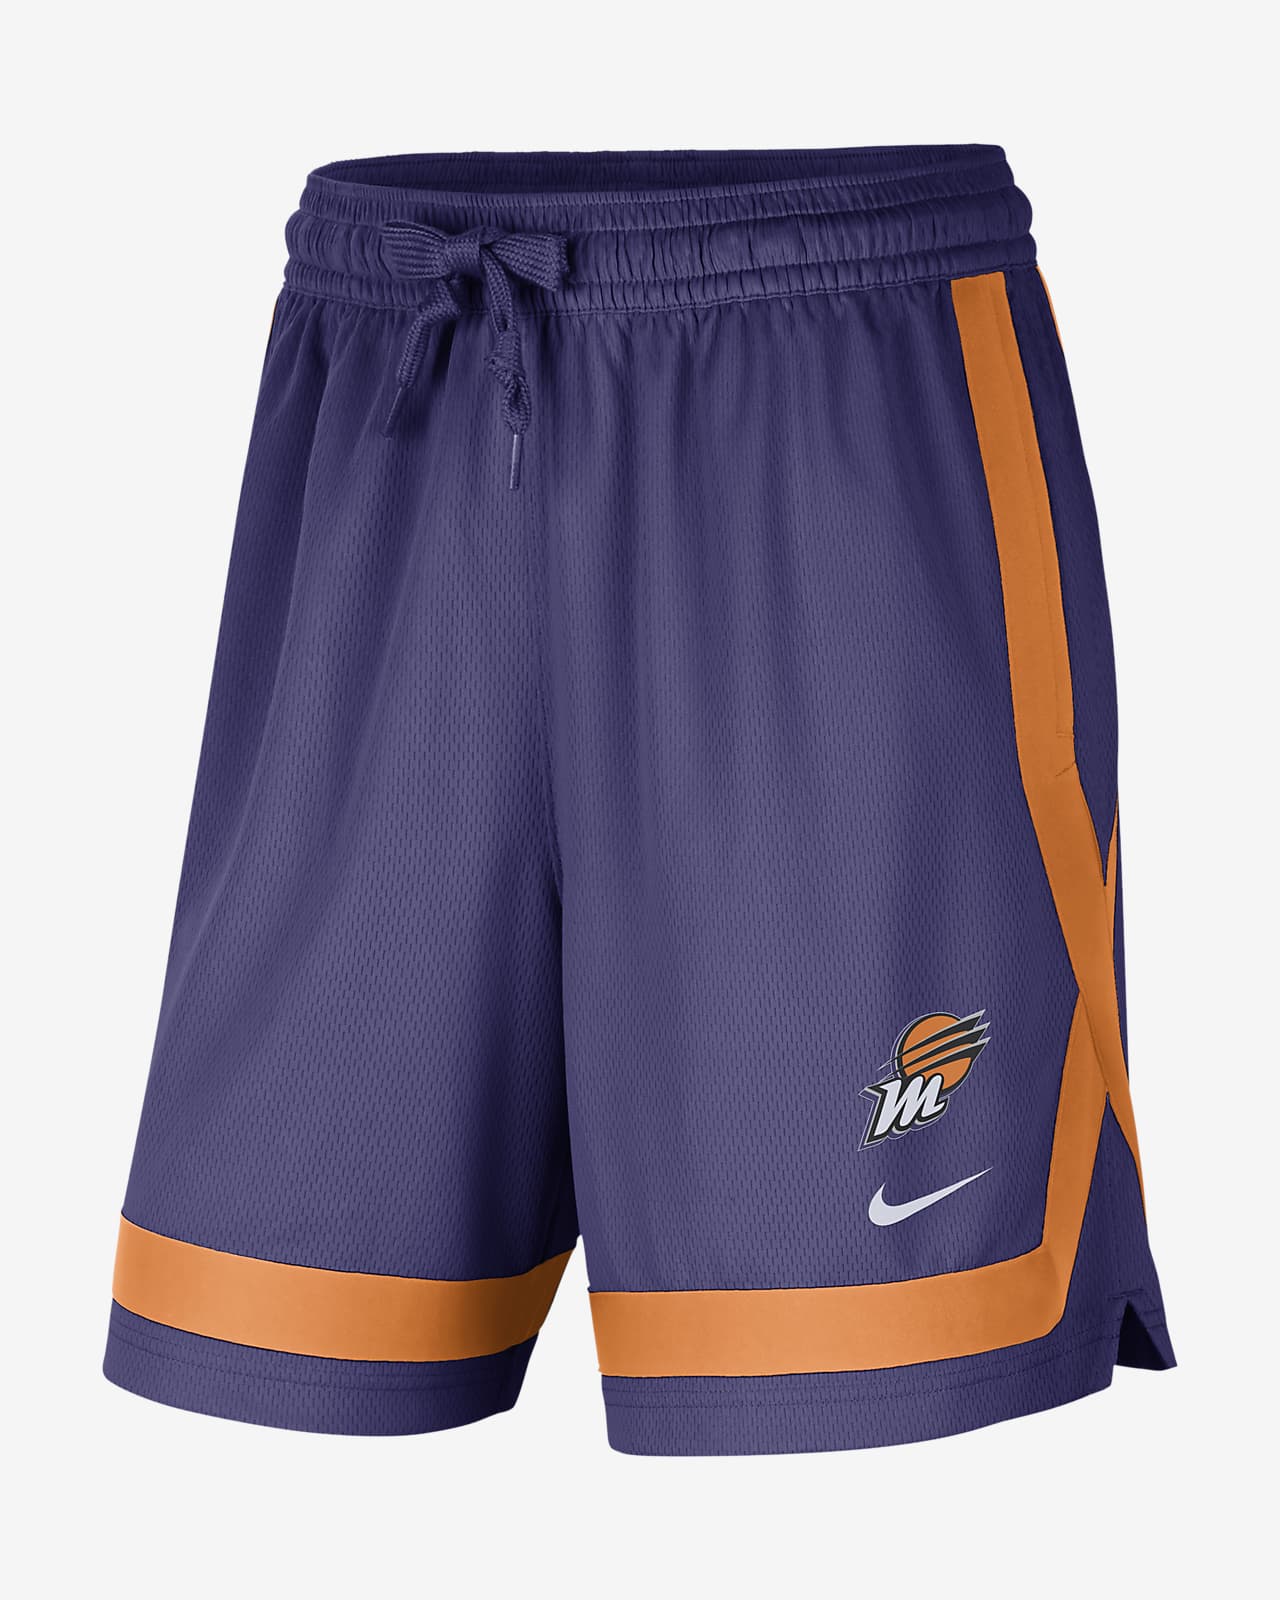 Phoenix Mercury Women's Nike WNBA Practice Shorts